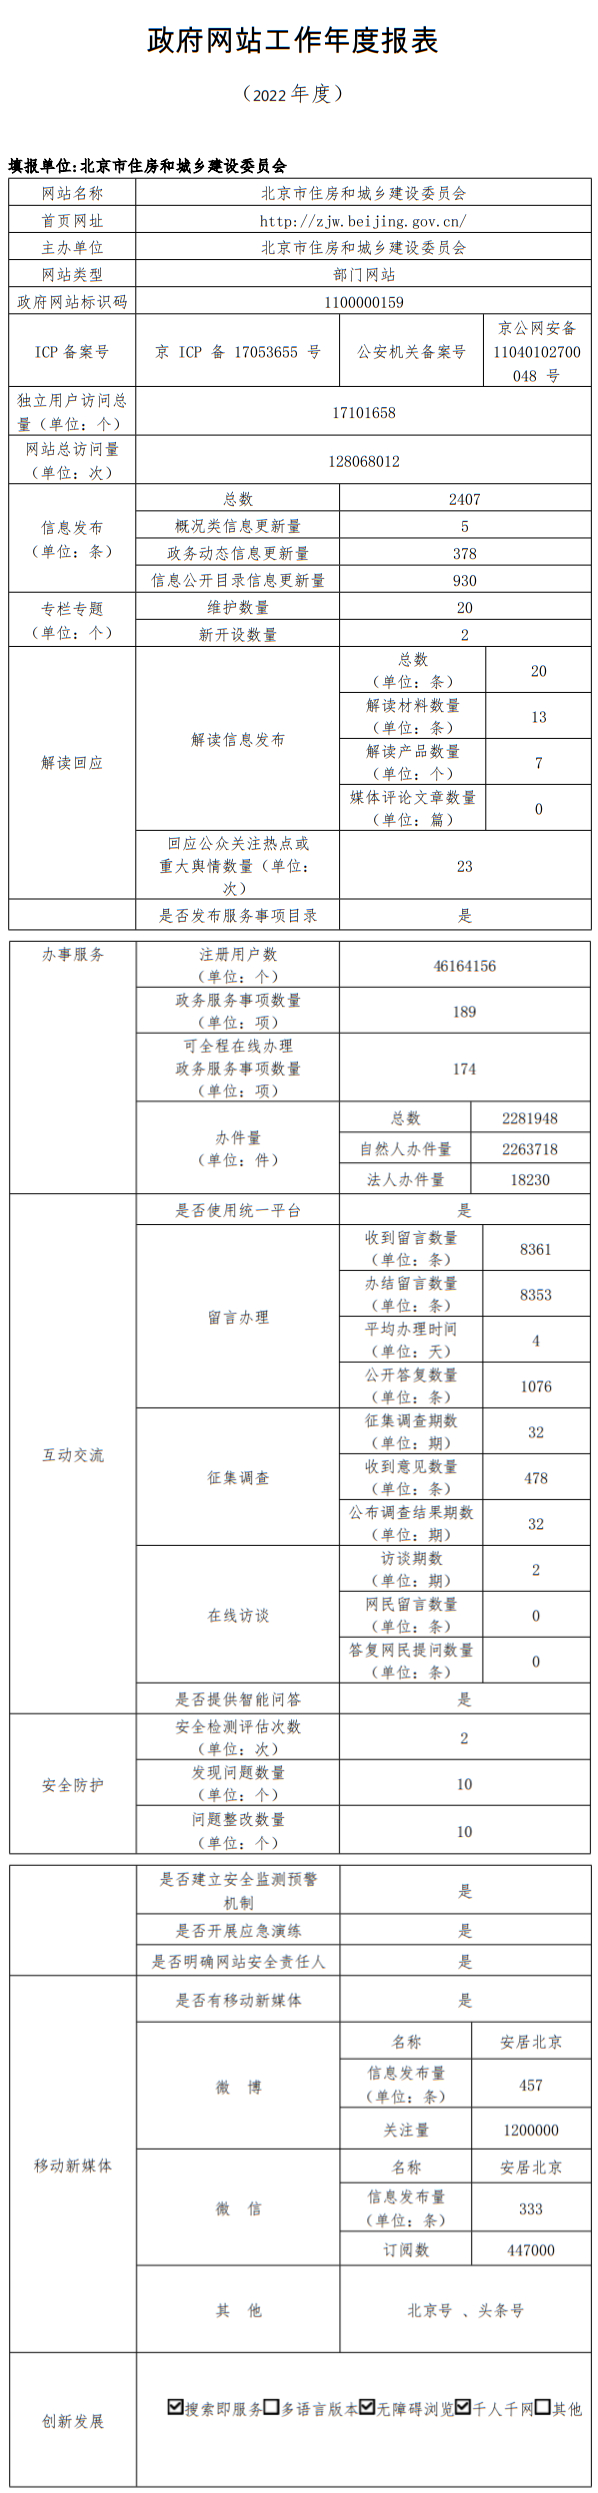 北京市住房和城乡建设委员会2022年政府网站年度工作报表